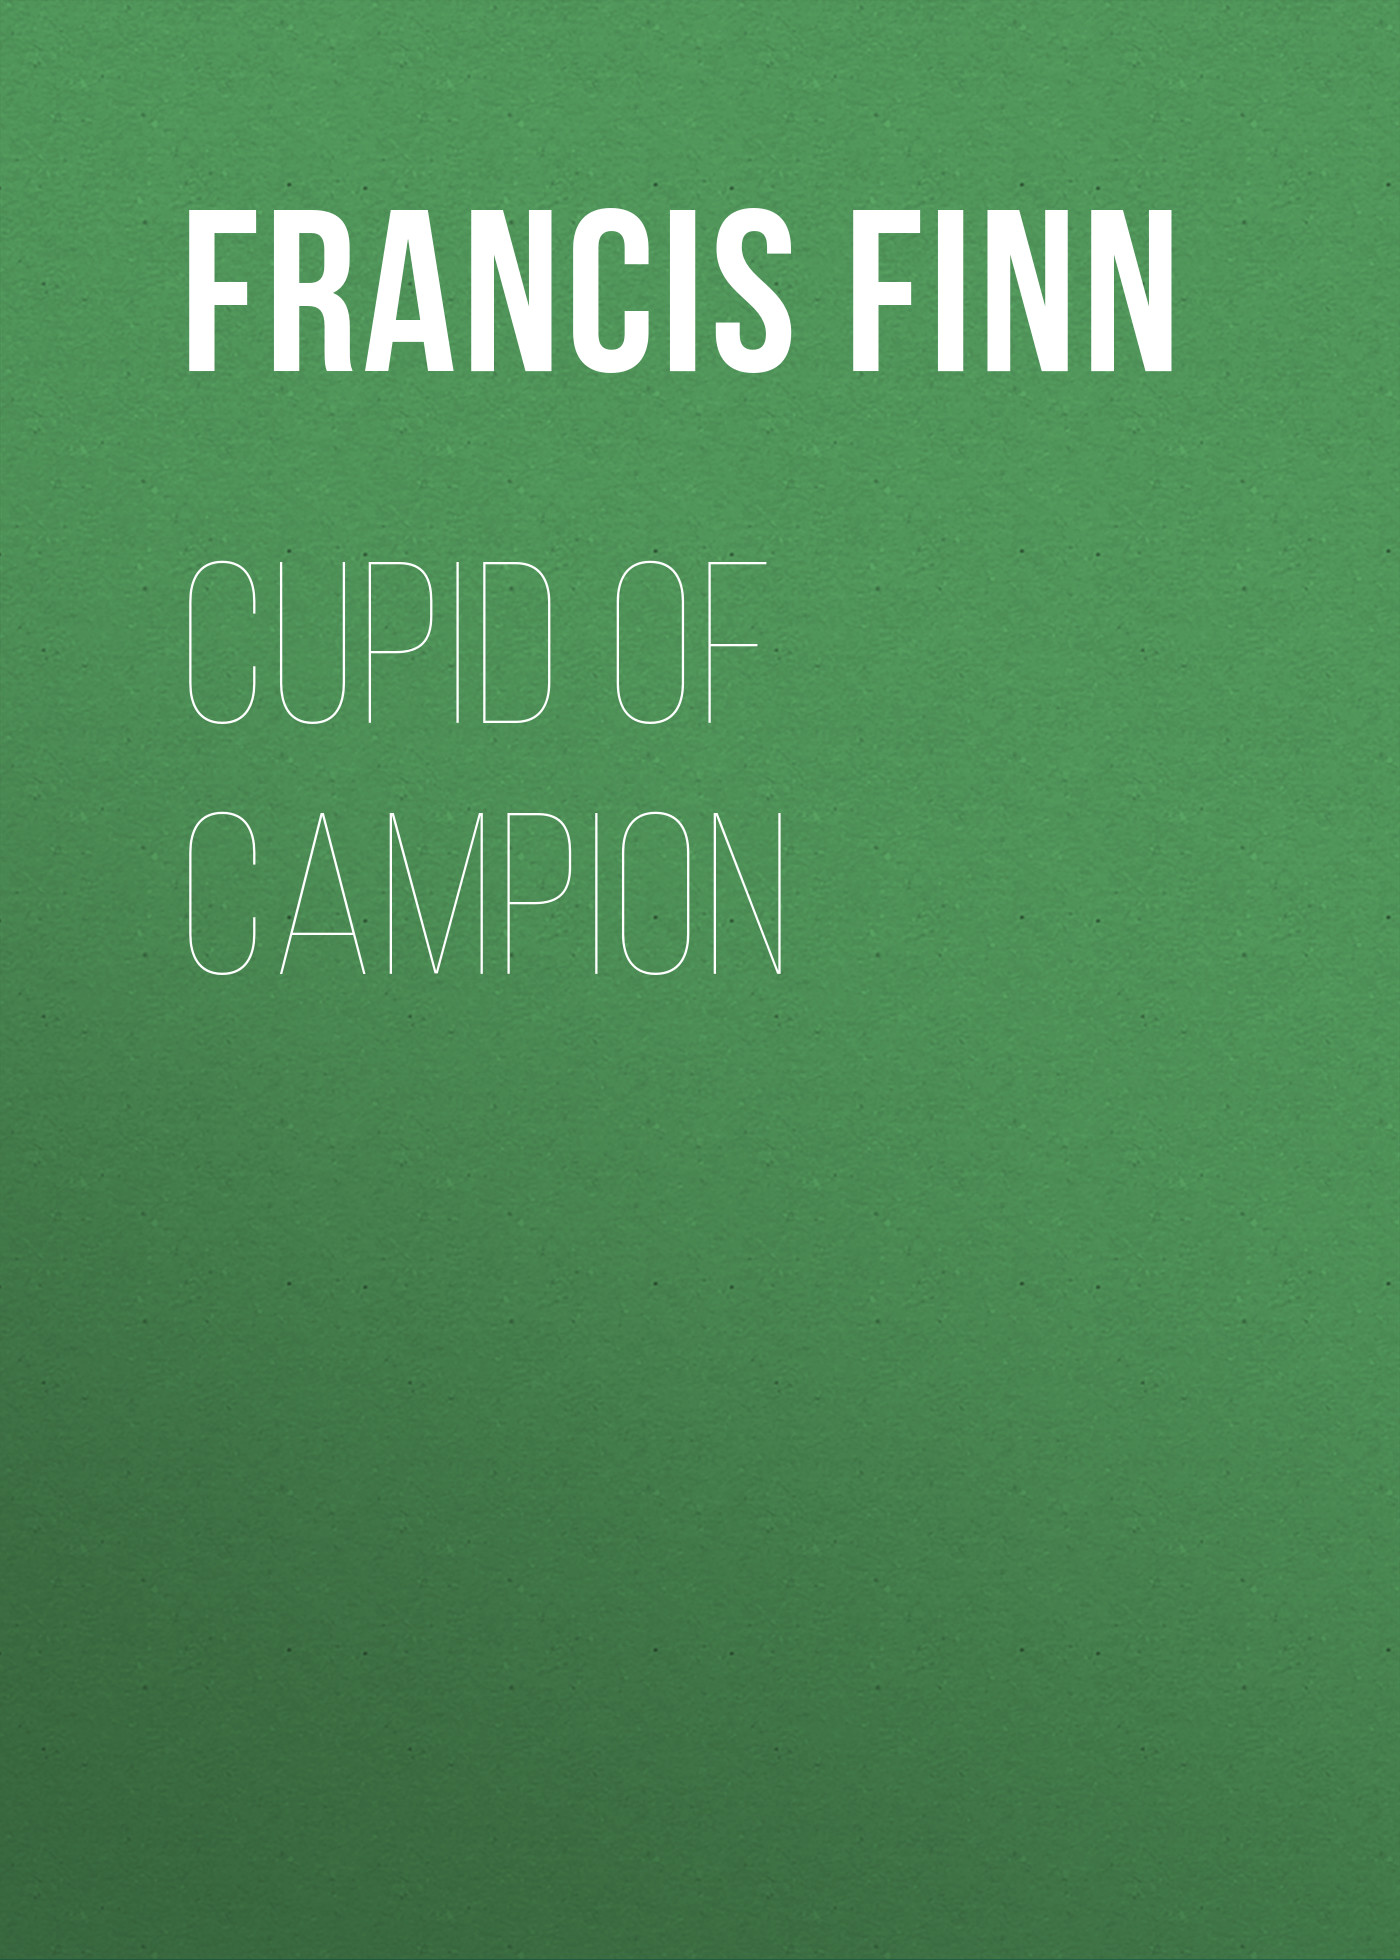 Книга Cupid of Campion из серии , созданная Francis Finn, может относится к жанру Приключения: прочее, Зарубежная классика. Стоимость электронной книги Cupid of Campion с идентификатором 23157547 составляет 5.99 руб.